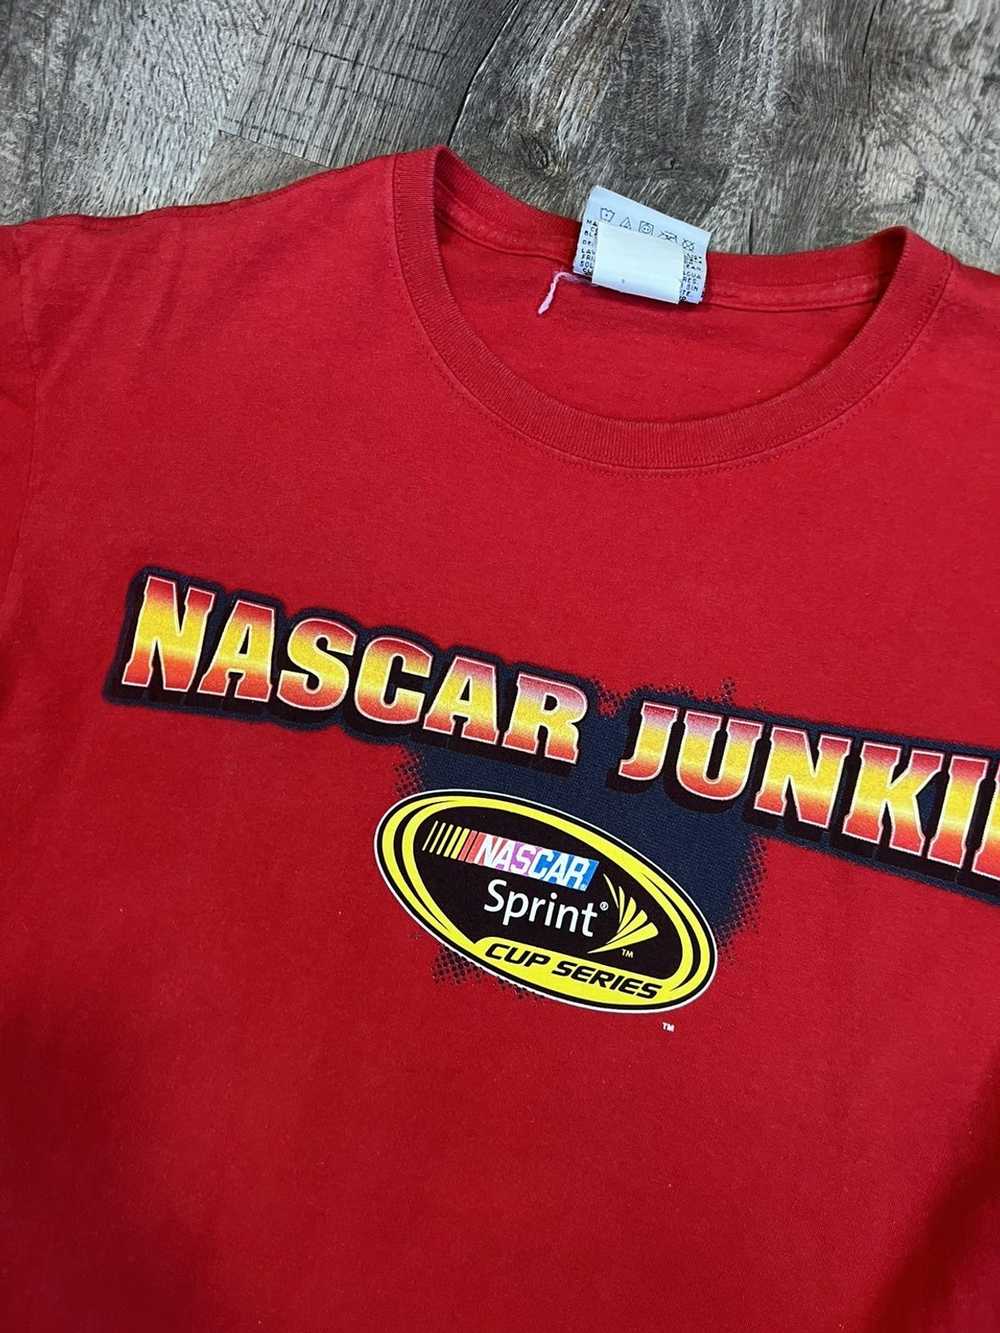 NASCAR × Vintage Vintage NASCAR Shirt - image 3